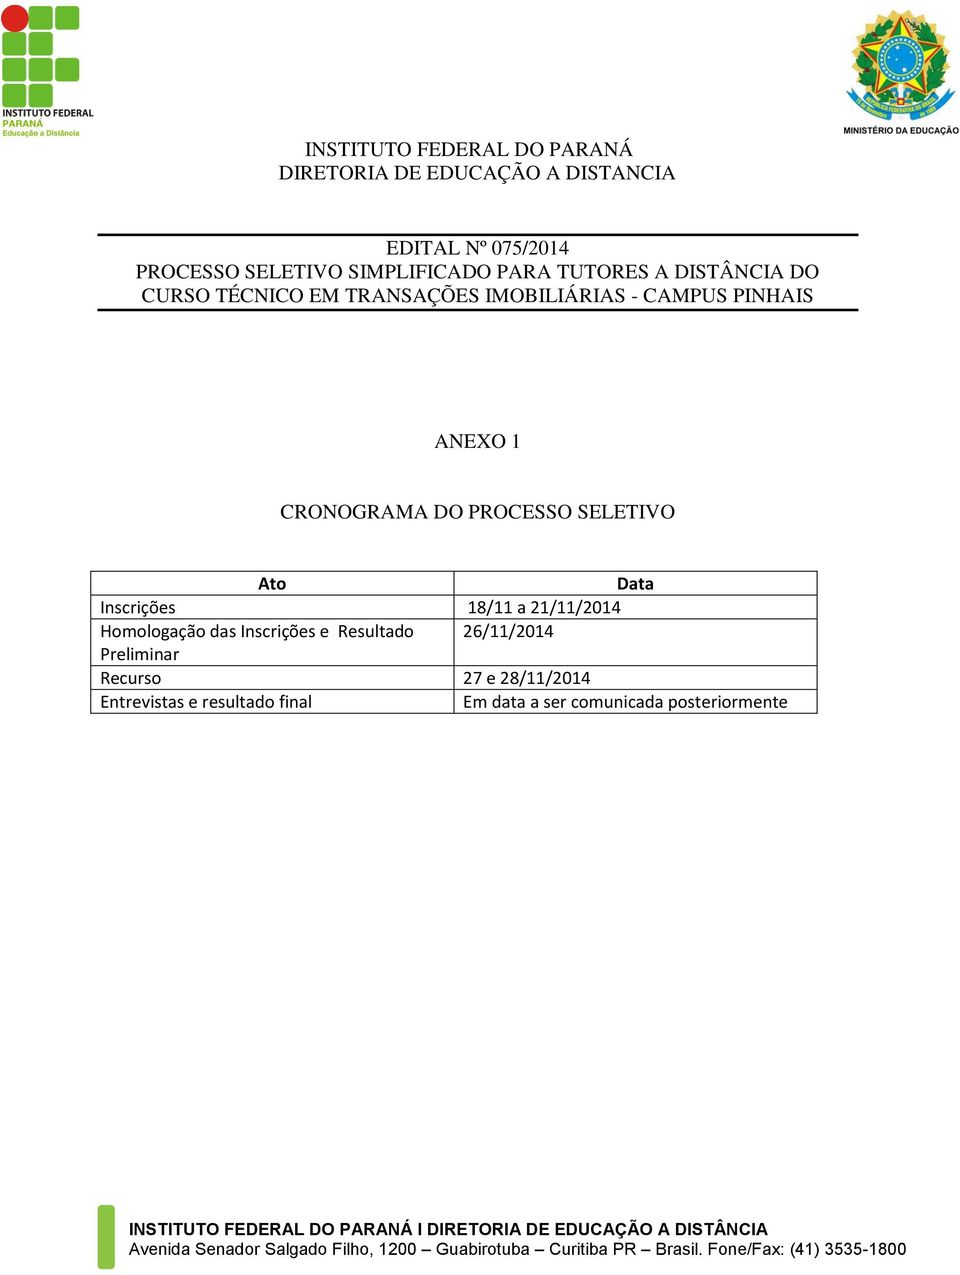 CRONOGRAMA DO PROCESSO SELETIVO Ato Data Inscrições 18/11 a 21/11/2014 Homologação das Inscrições e